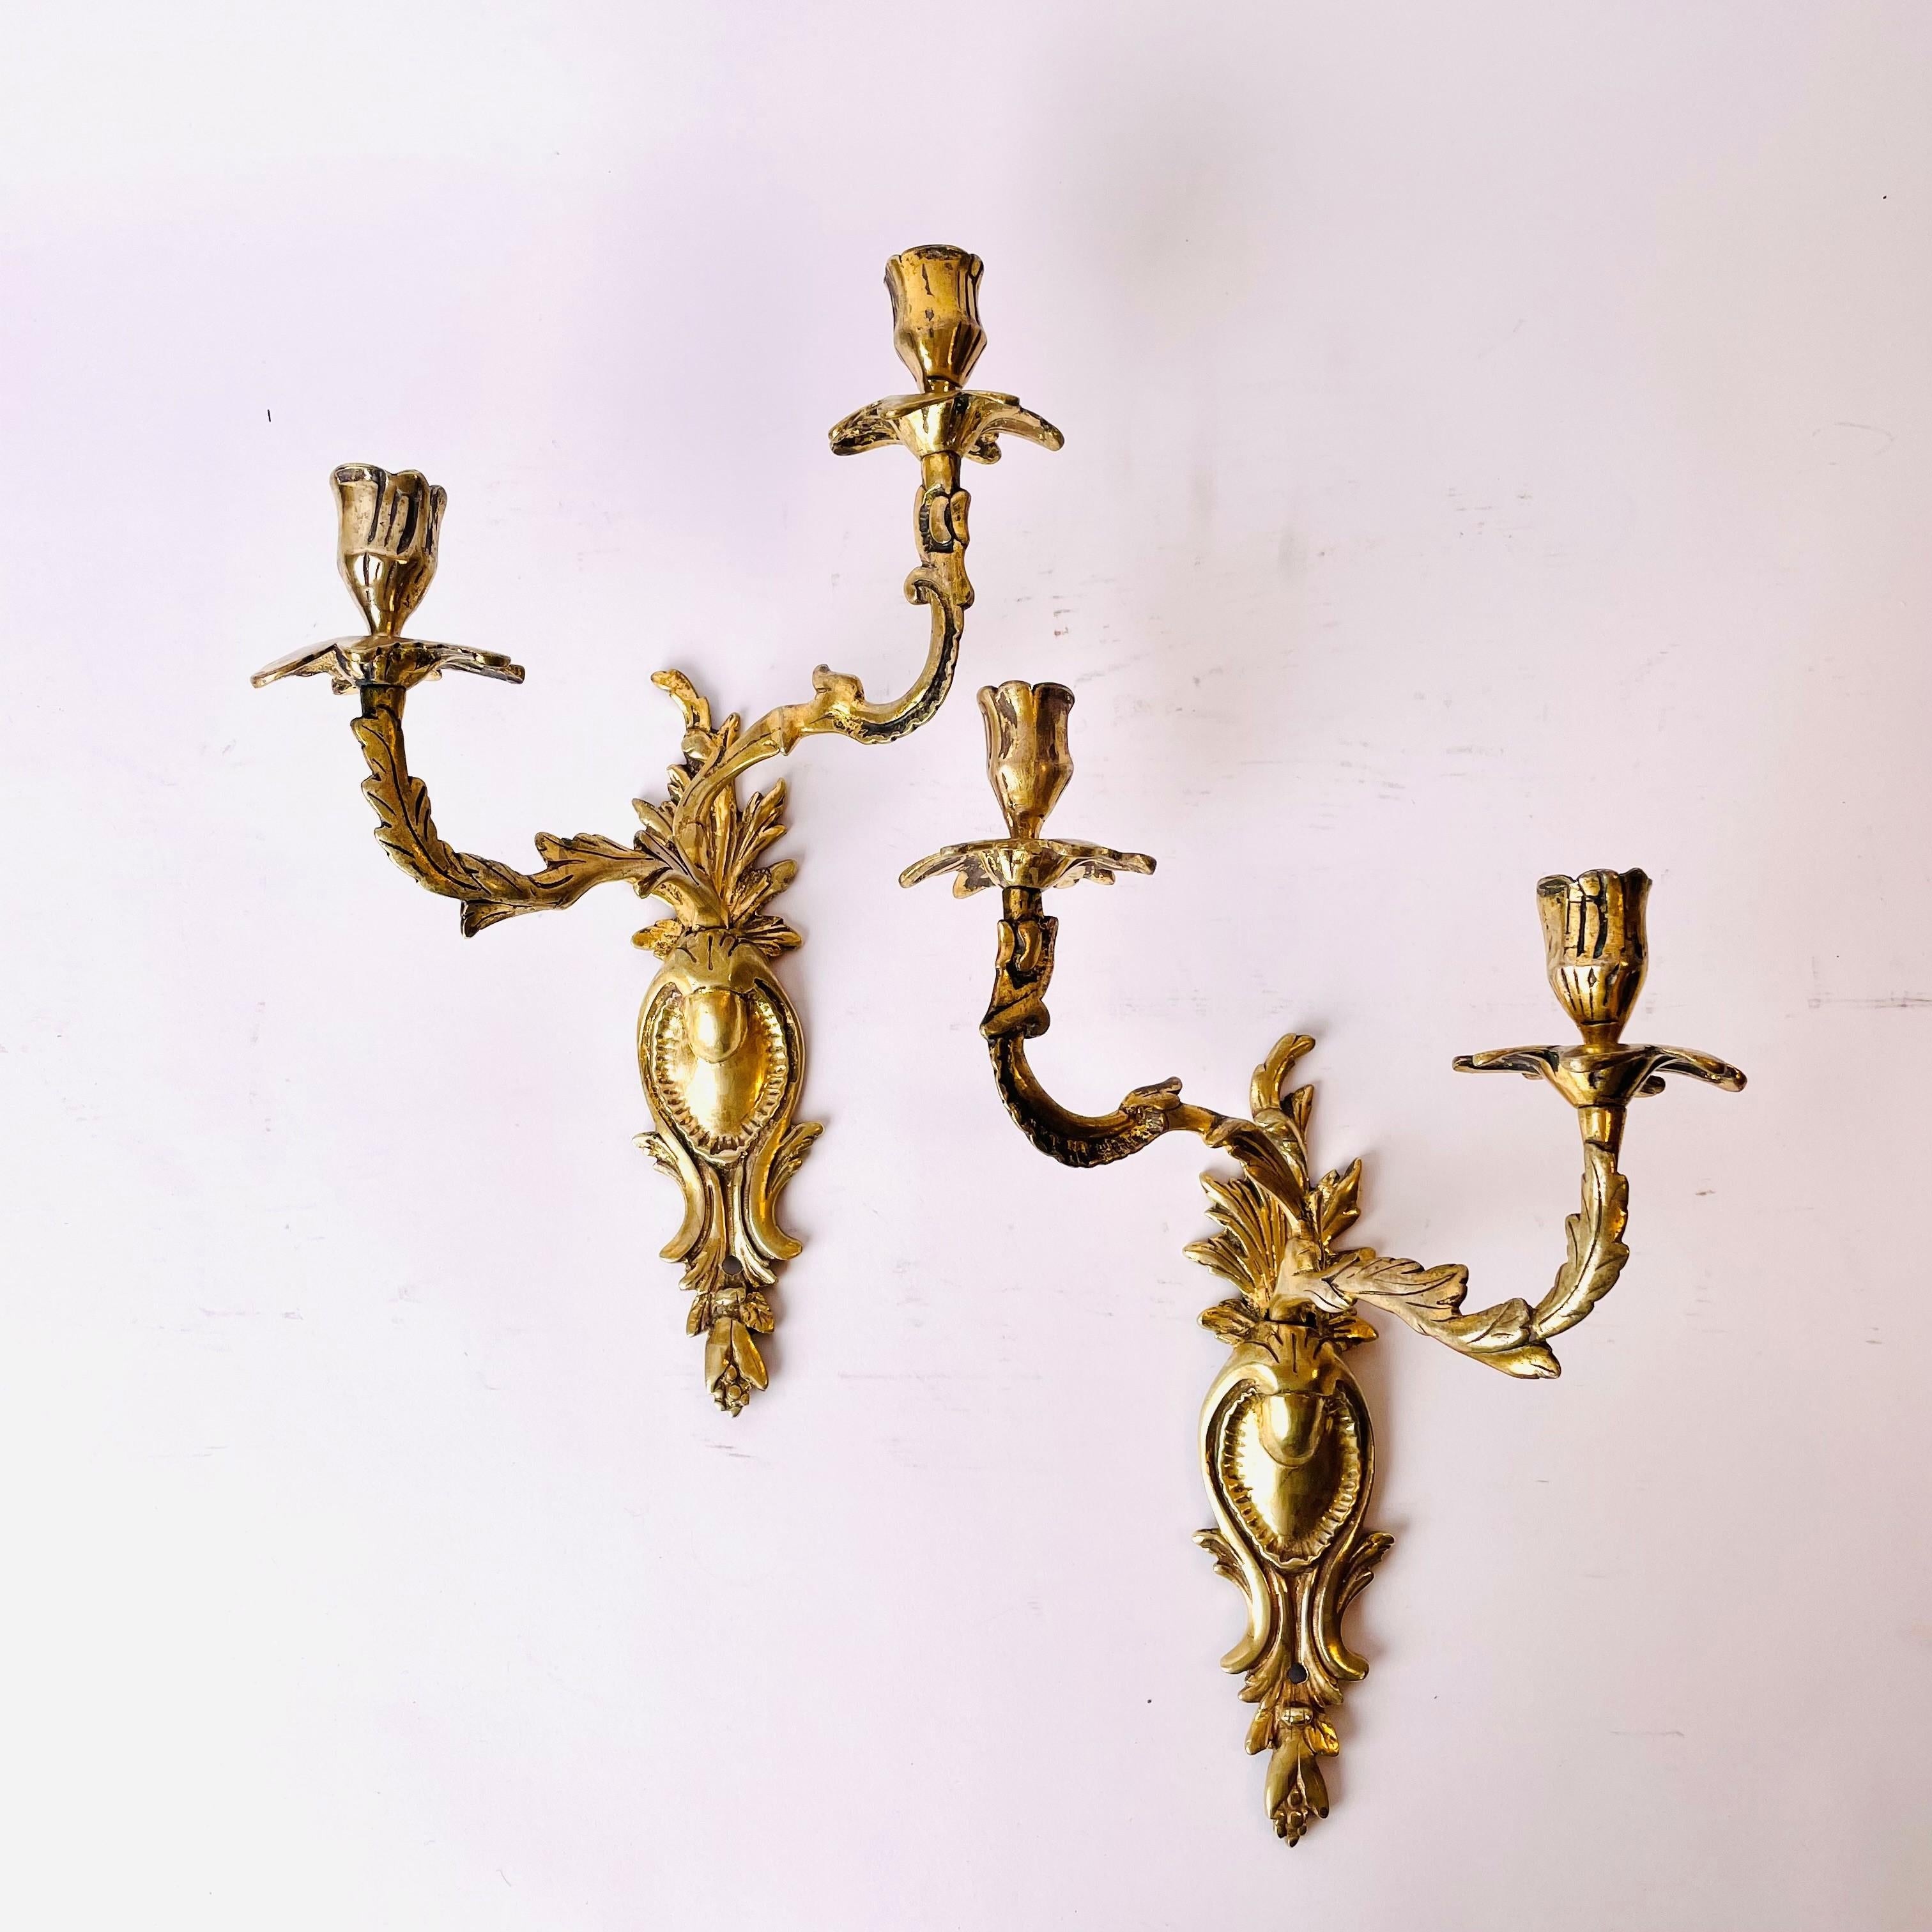 Une belle paire d'Appliques en bronze doré, Rococo du milieu du 18ème siècle.

Une certaine usure de la dorure d'origine (voir photos), mais l'impression générale de ces appliques vieilles de 270 ans est qu'elles ont une belle patine.

Usure